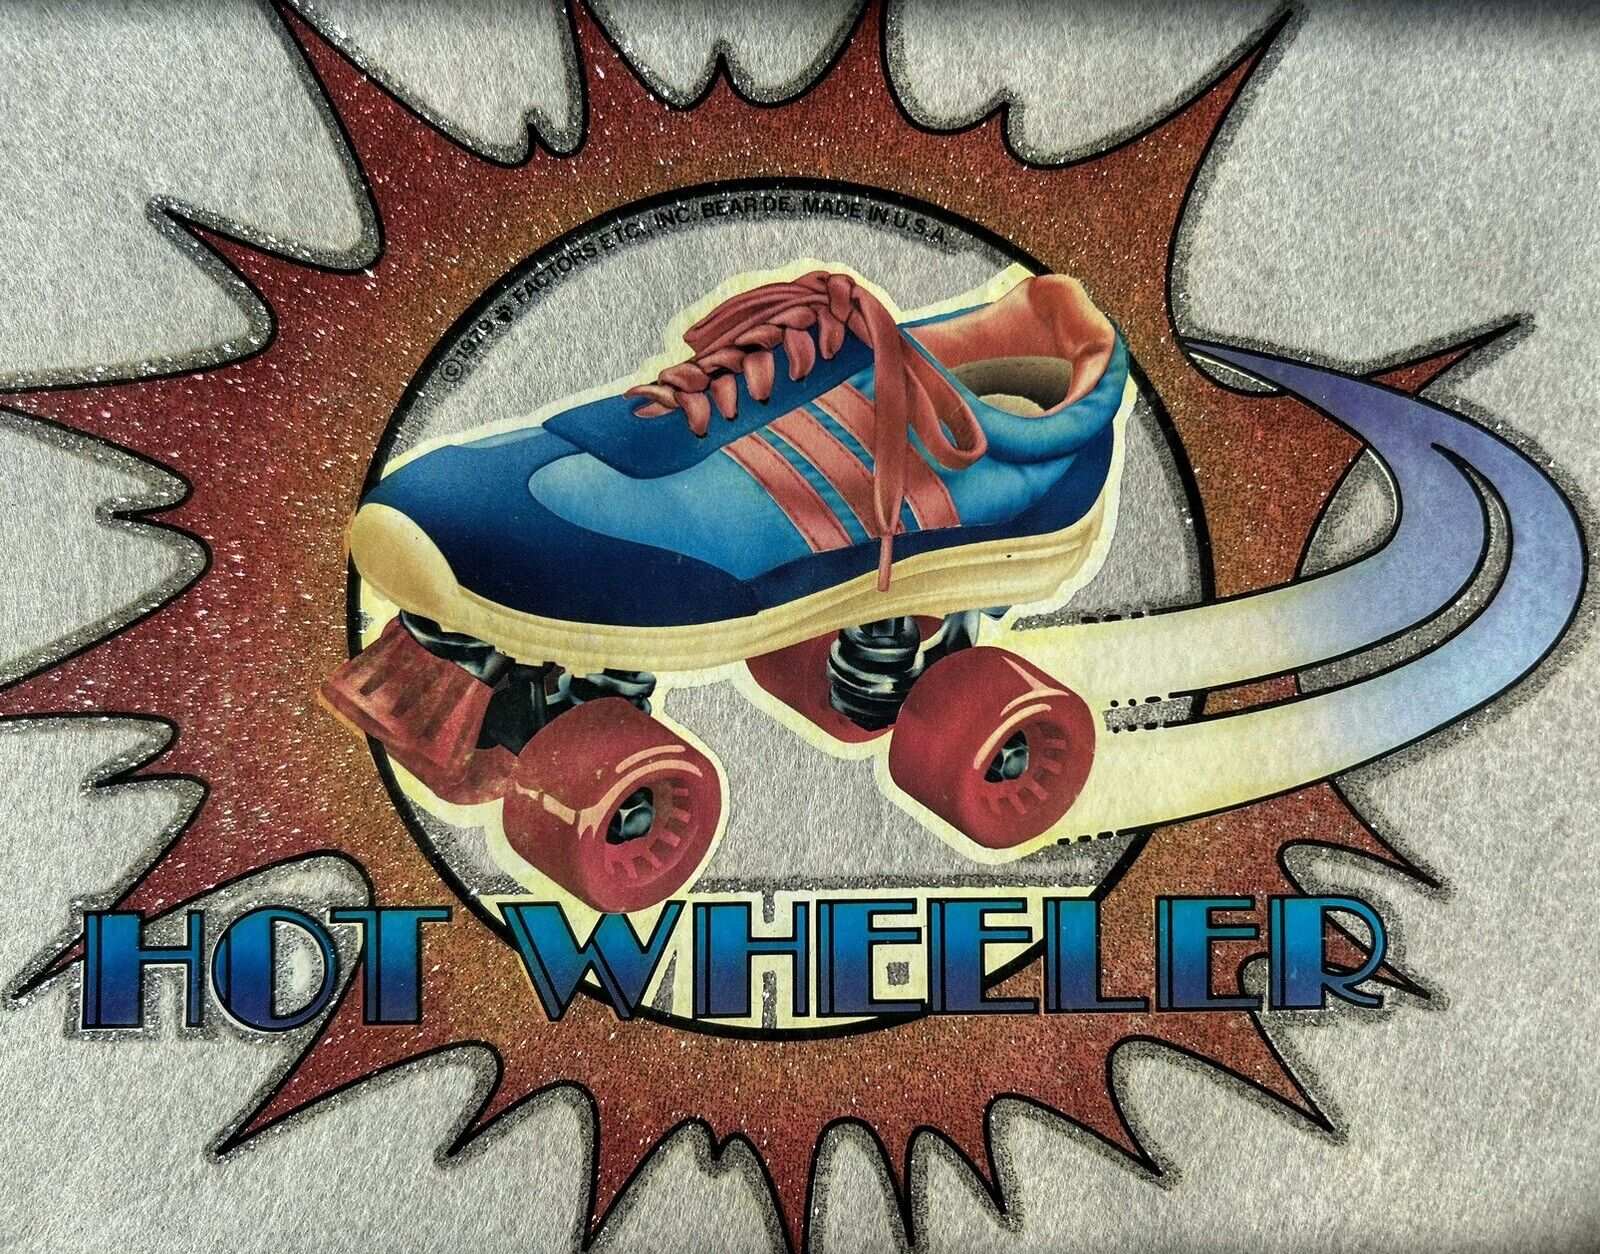 Lot of (5) Vintage 1970s HOT WHEELER Roller Skates Glitter Iron Shirt Transfer